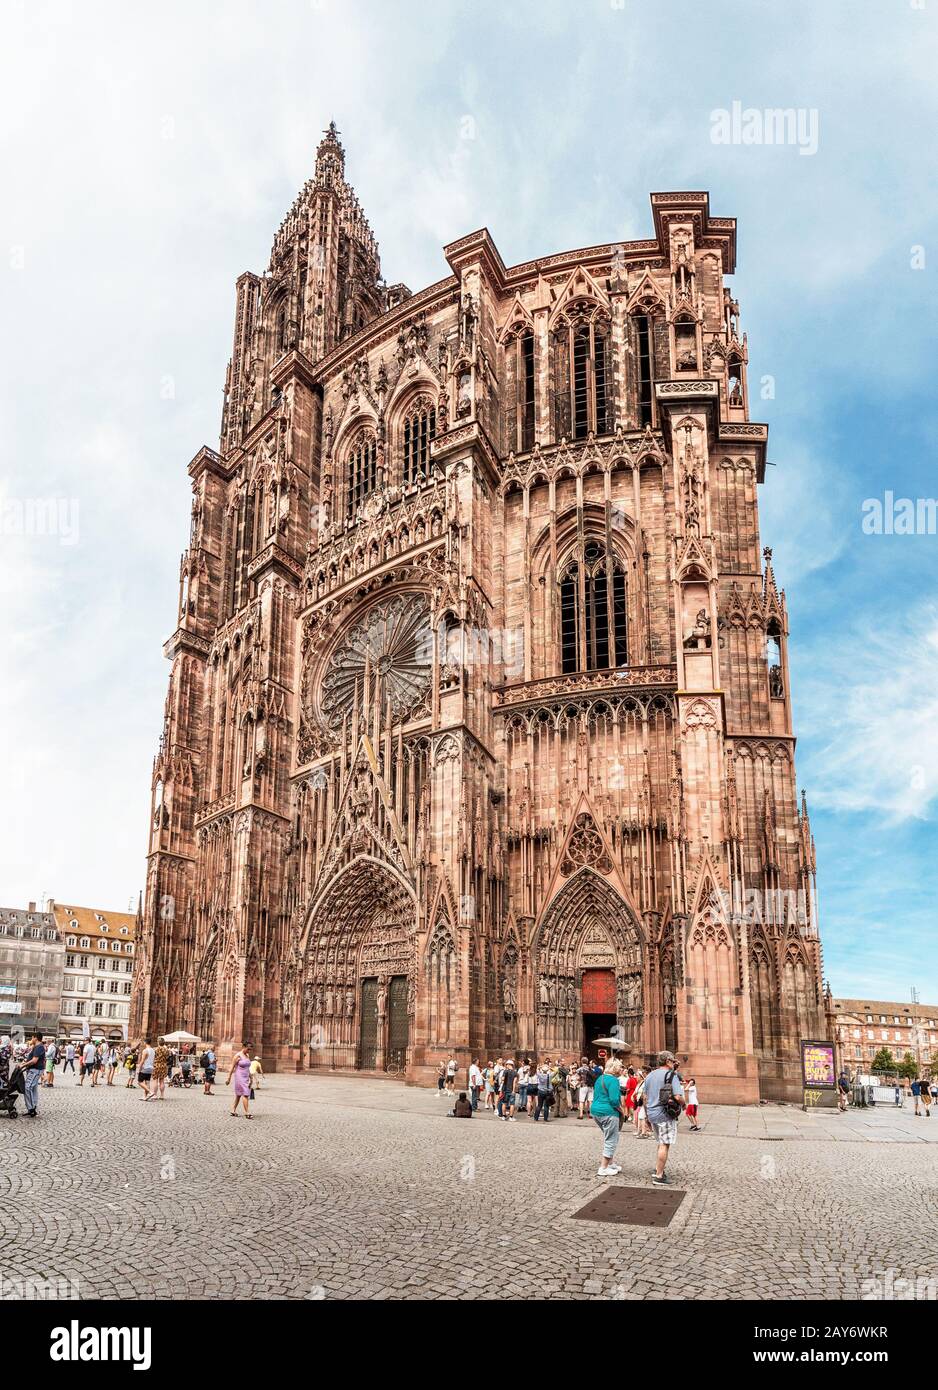 Juli 2019 in Straßburg, Frankreich: Das Wahrzeichen der Stadt - die Kathedrale Notre Dame de Strasbourg Stockfoto